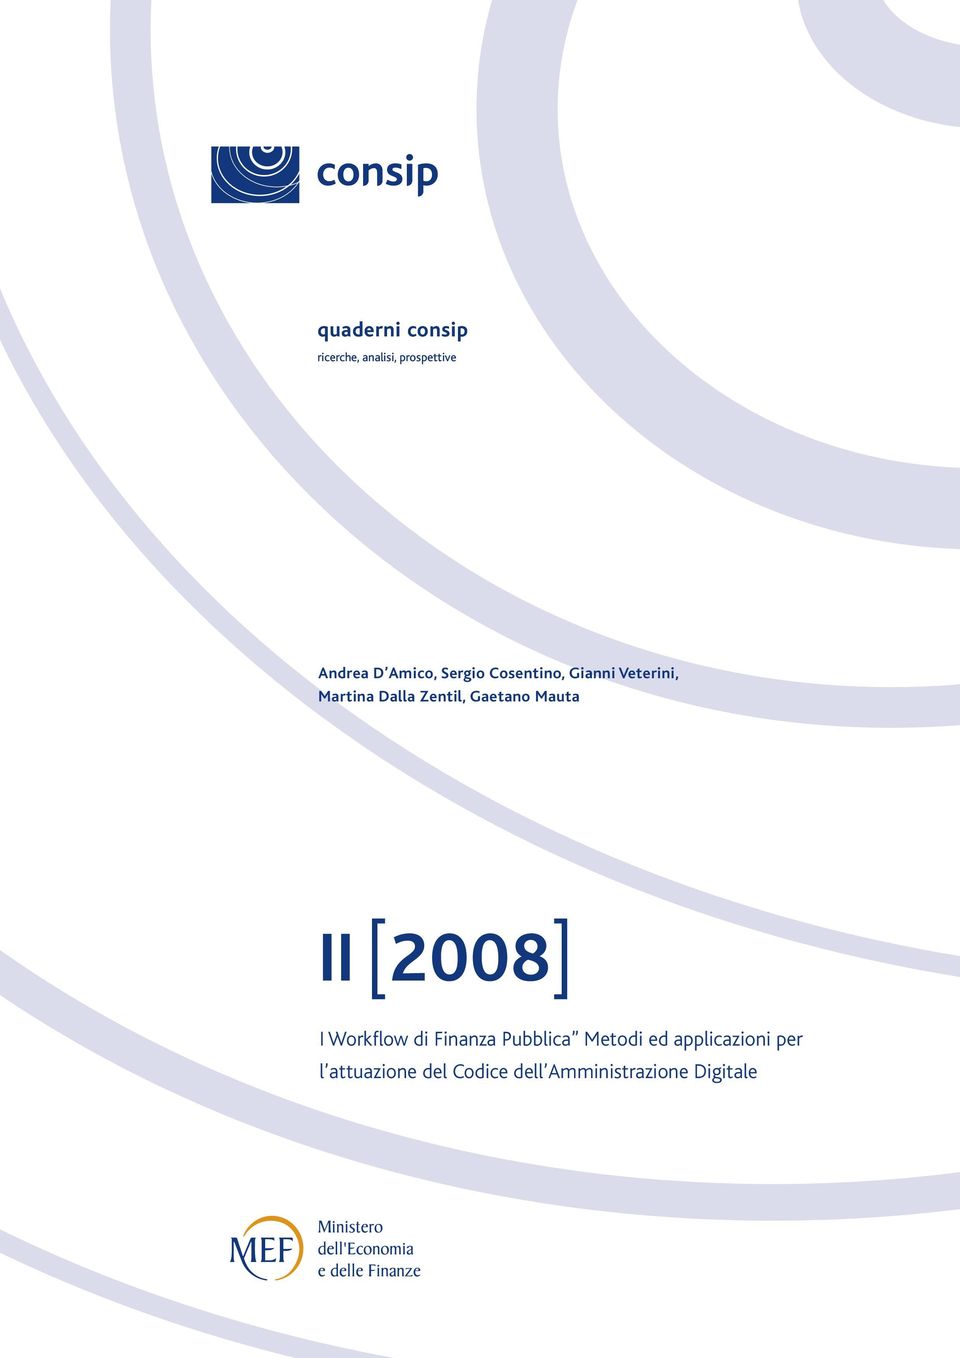 Gaetano Mauta II [2008] I Workflow di Finanza Pubblica Metodi